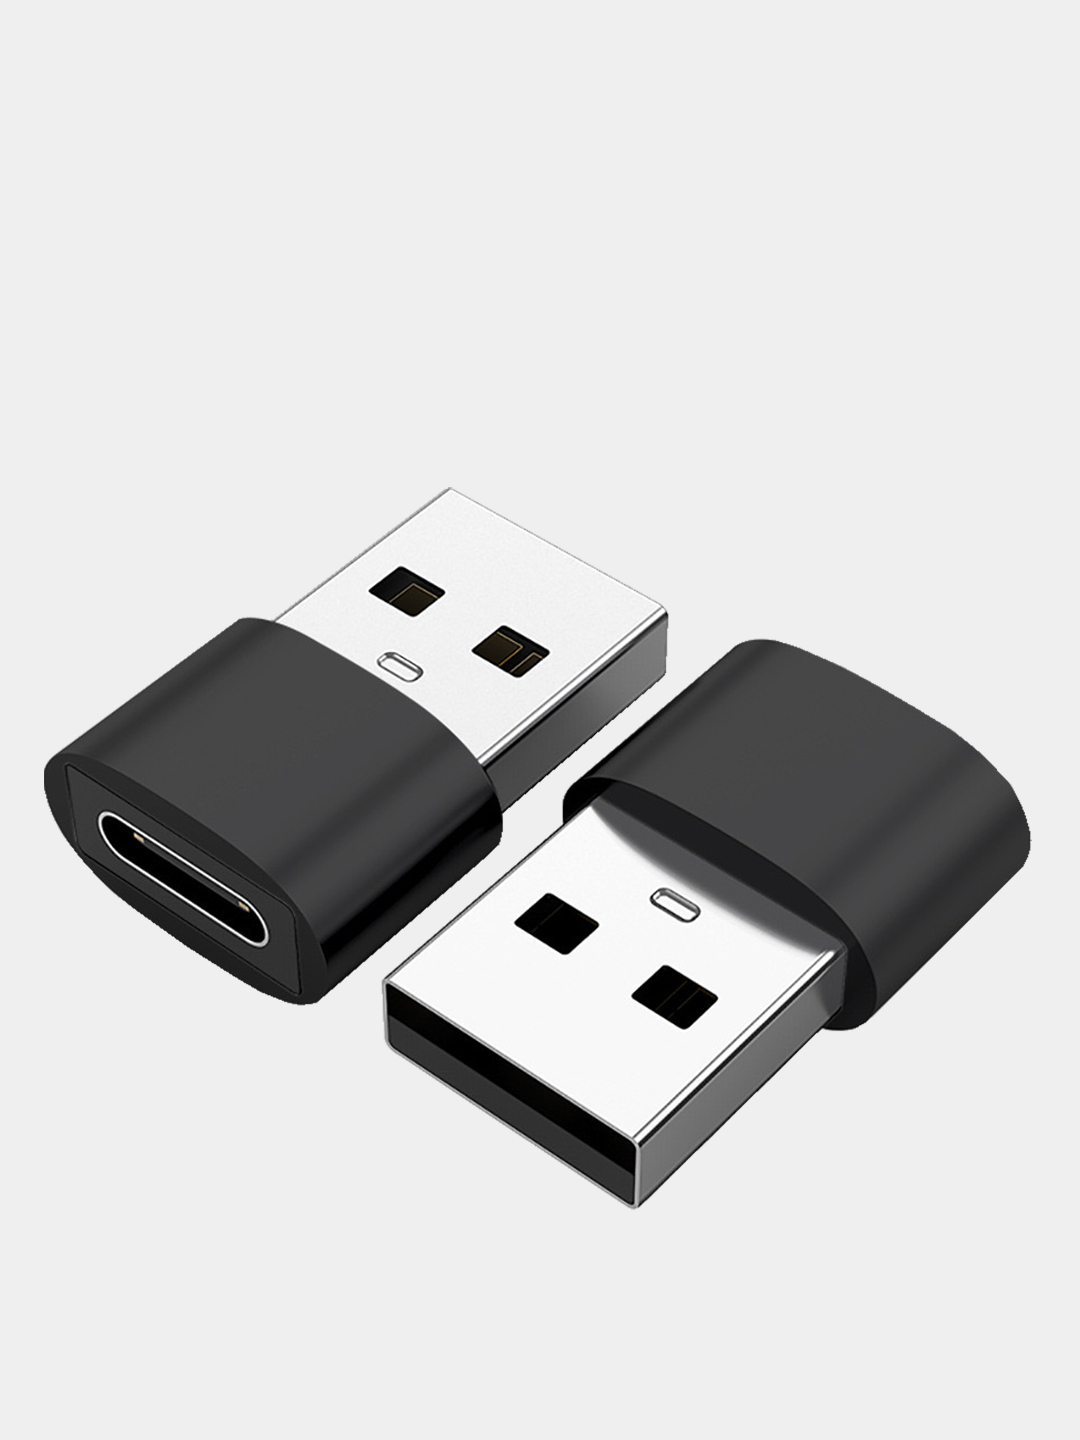  переходник USB Type C на USB-A otg за 89 ₽  в интернет .